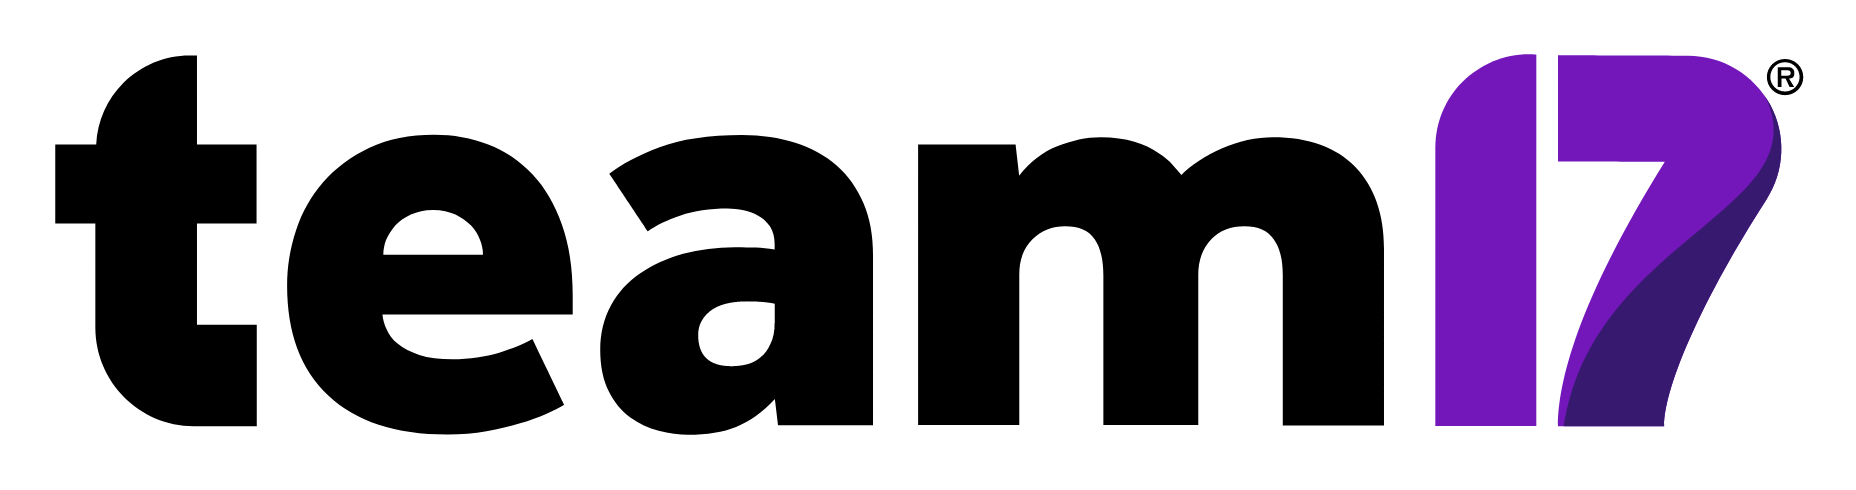 Team17 Logo groß für dunkle Hintergründe (transparentes PNG)